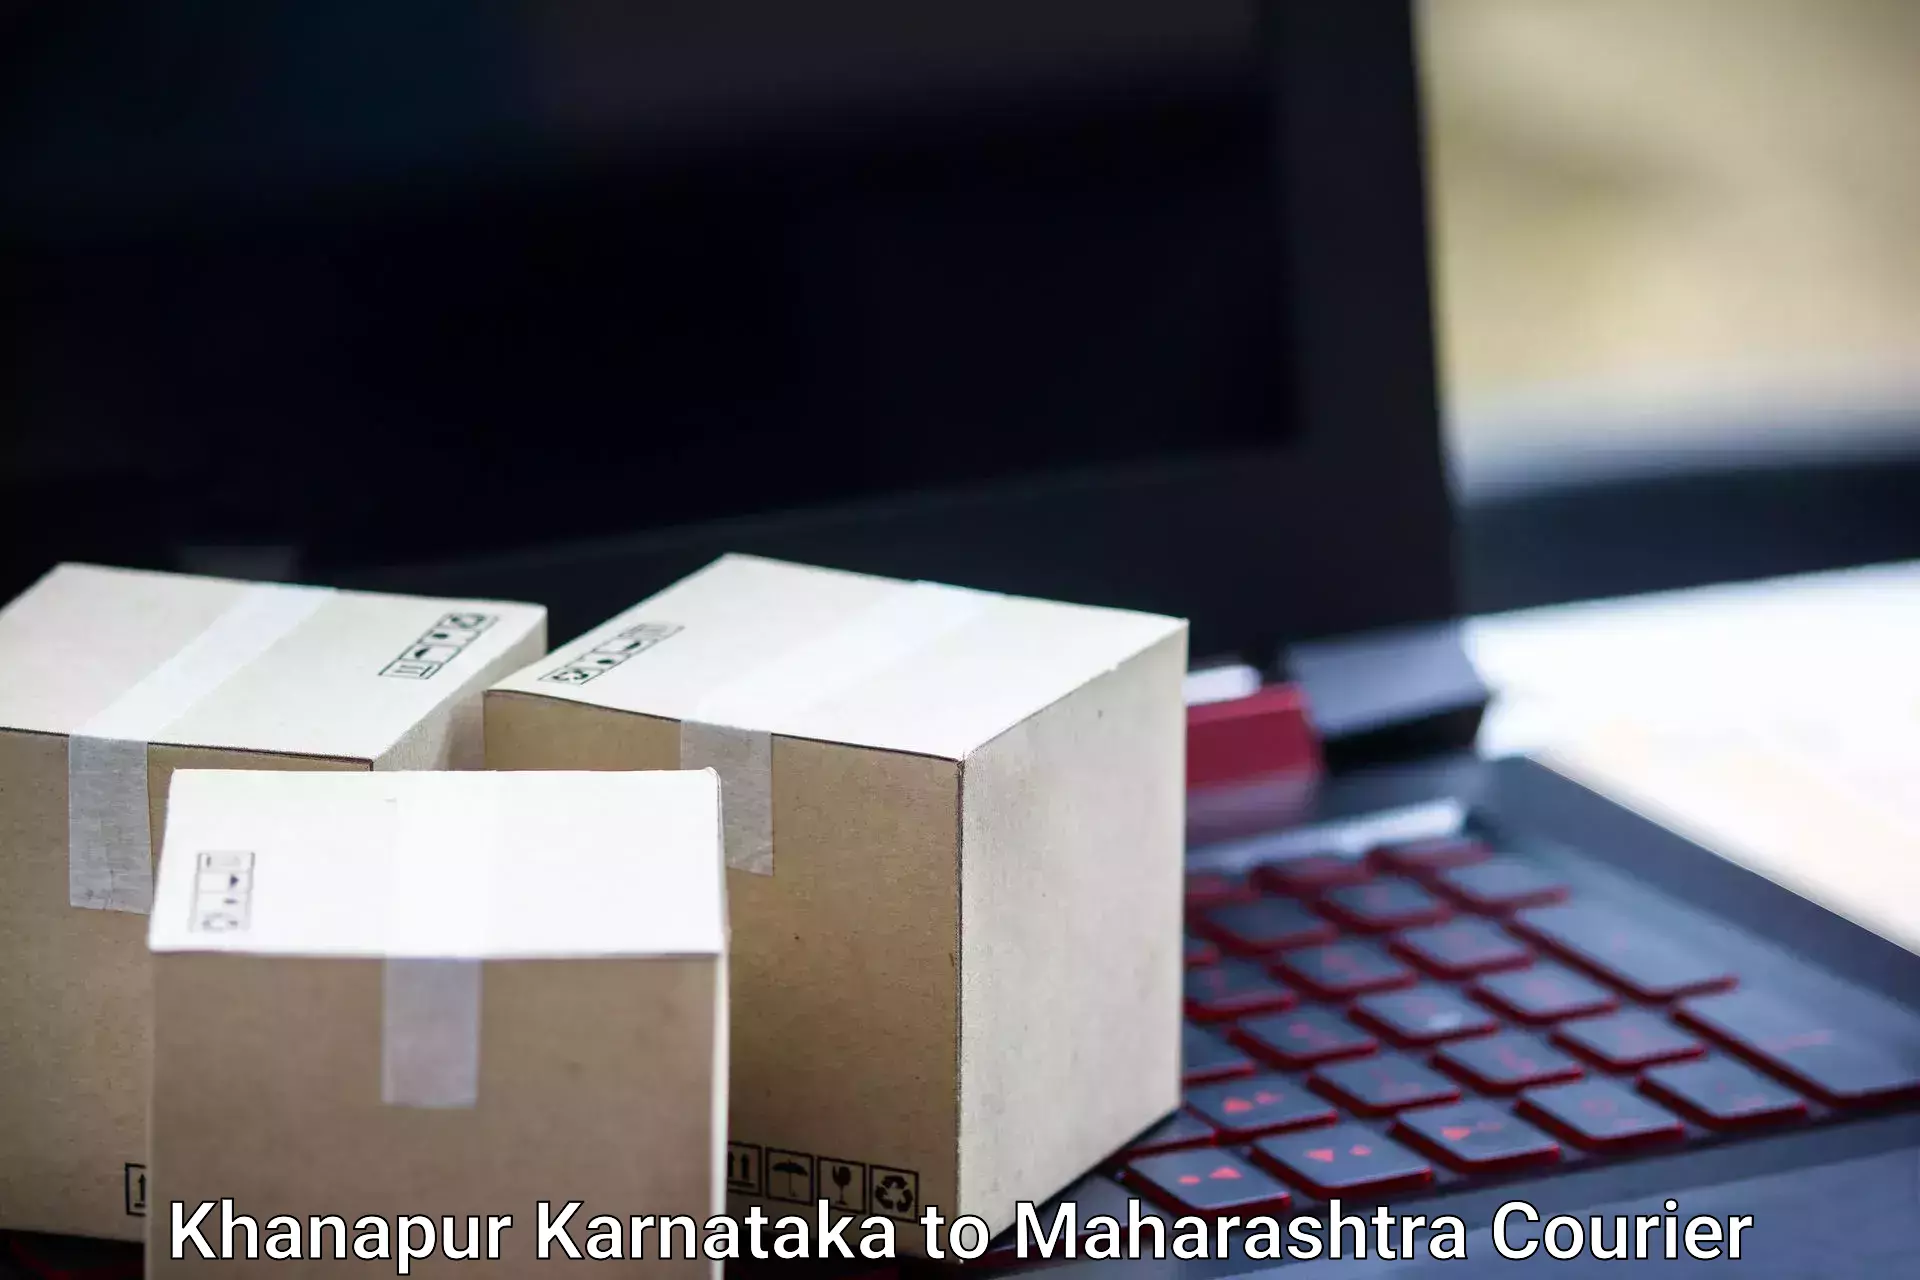 Baggage delivery technology Khanapur Karnataka to Patan Satara